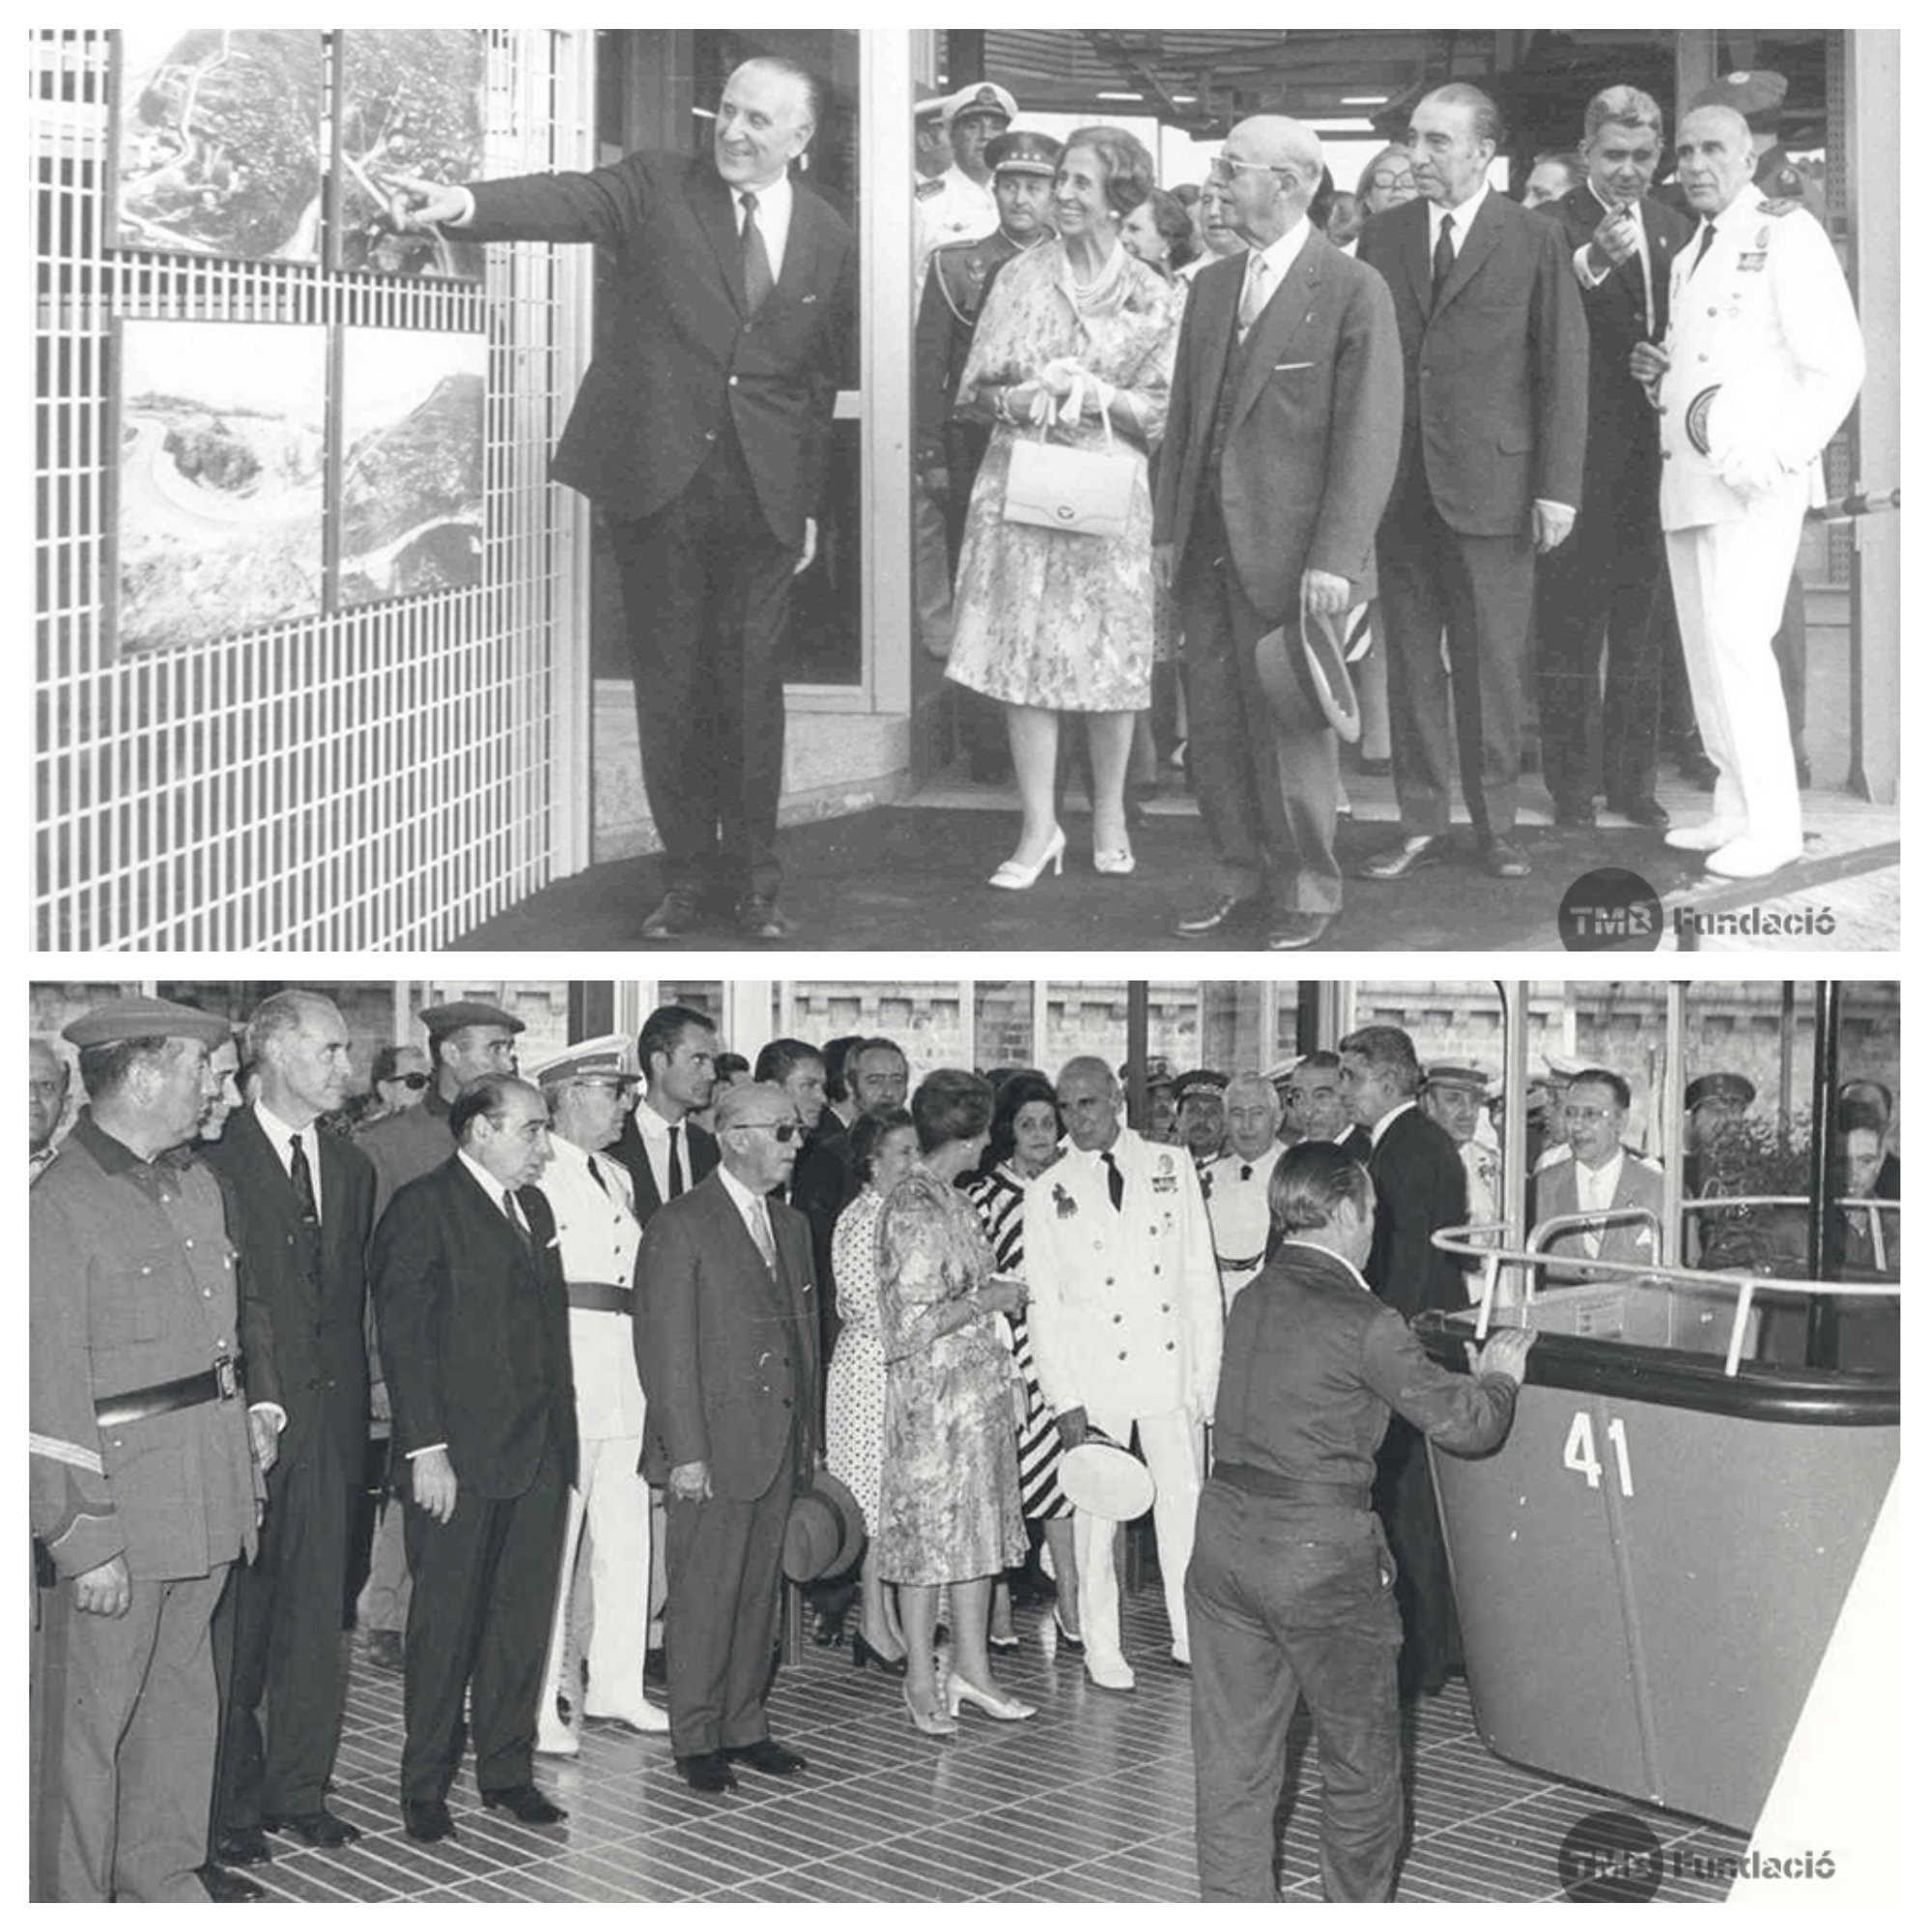 Imatges de la inauguració del Telefèric de Montjuïc el 22 de juny de 1970, amb l'alcalde de Barcelona José Mª Porcioles i el general Franco / Fotos: Arxiu TMB